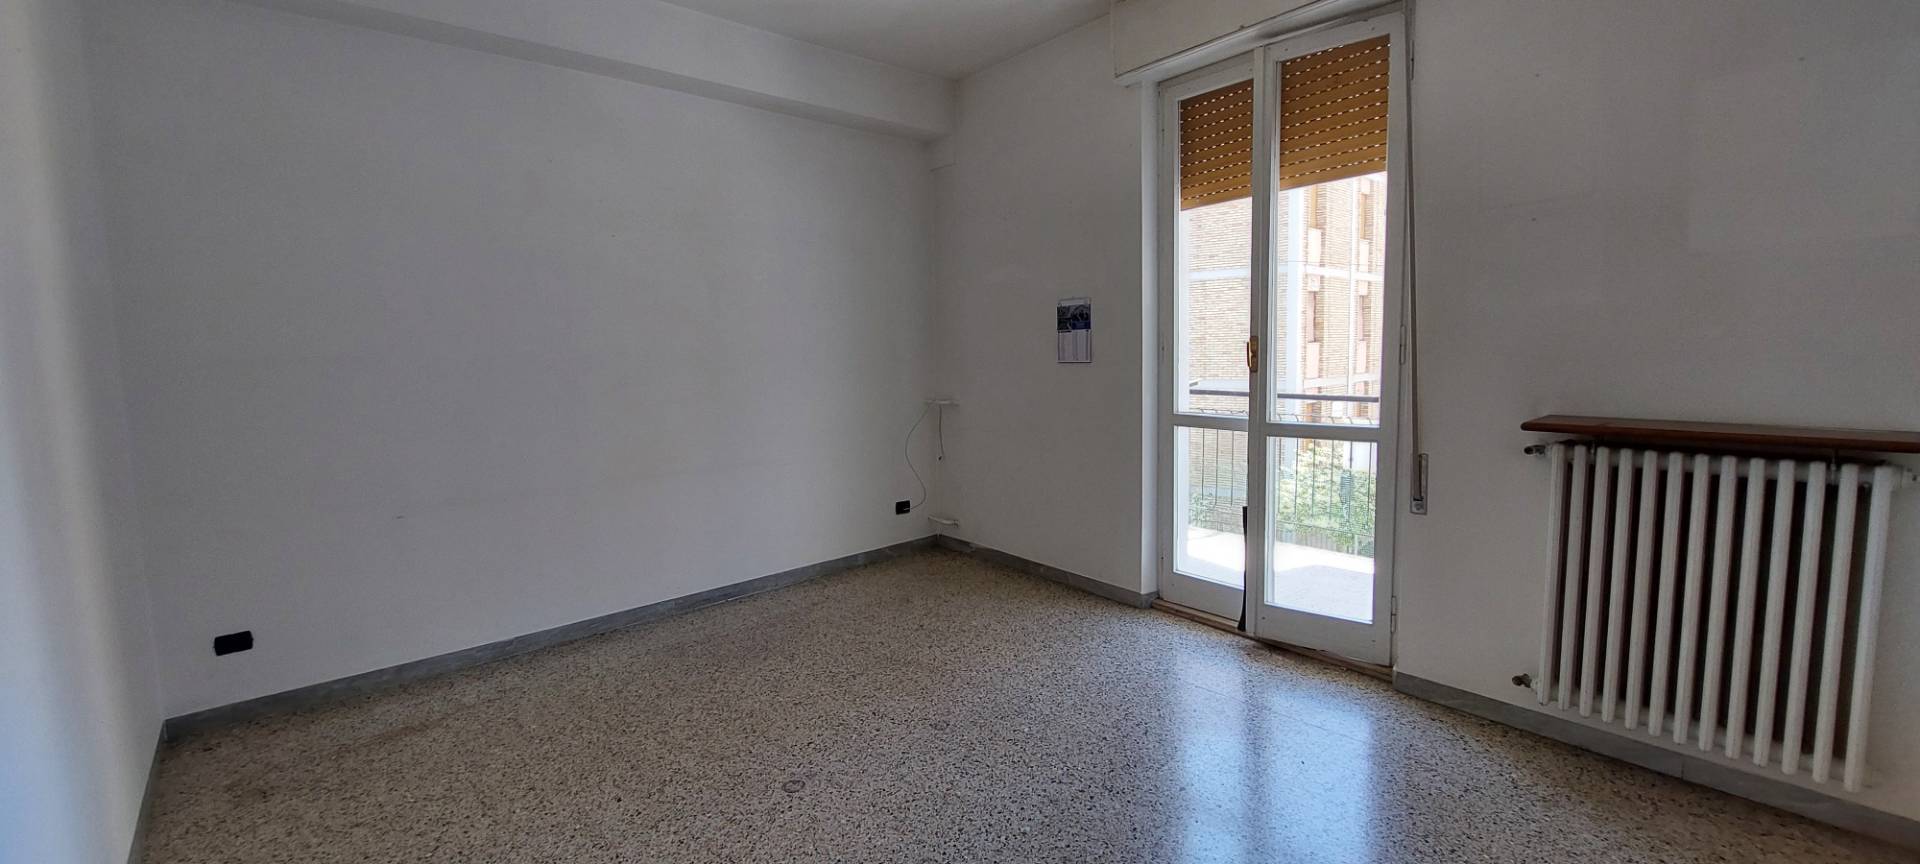 Appartamento in vendita, Ascoli Piceno p.ta cappuccina